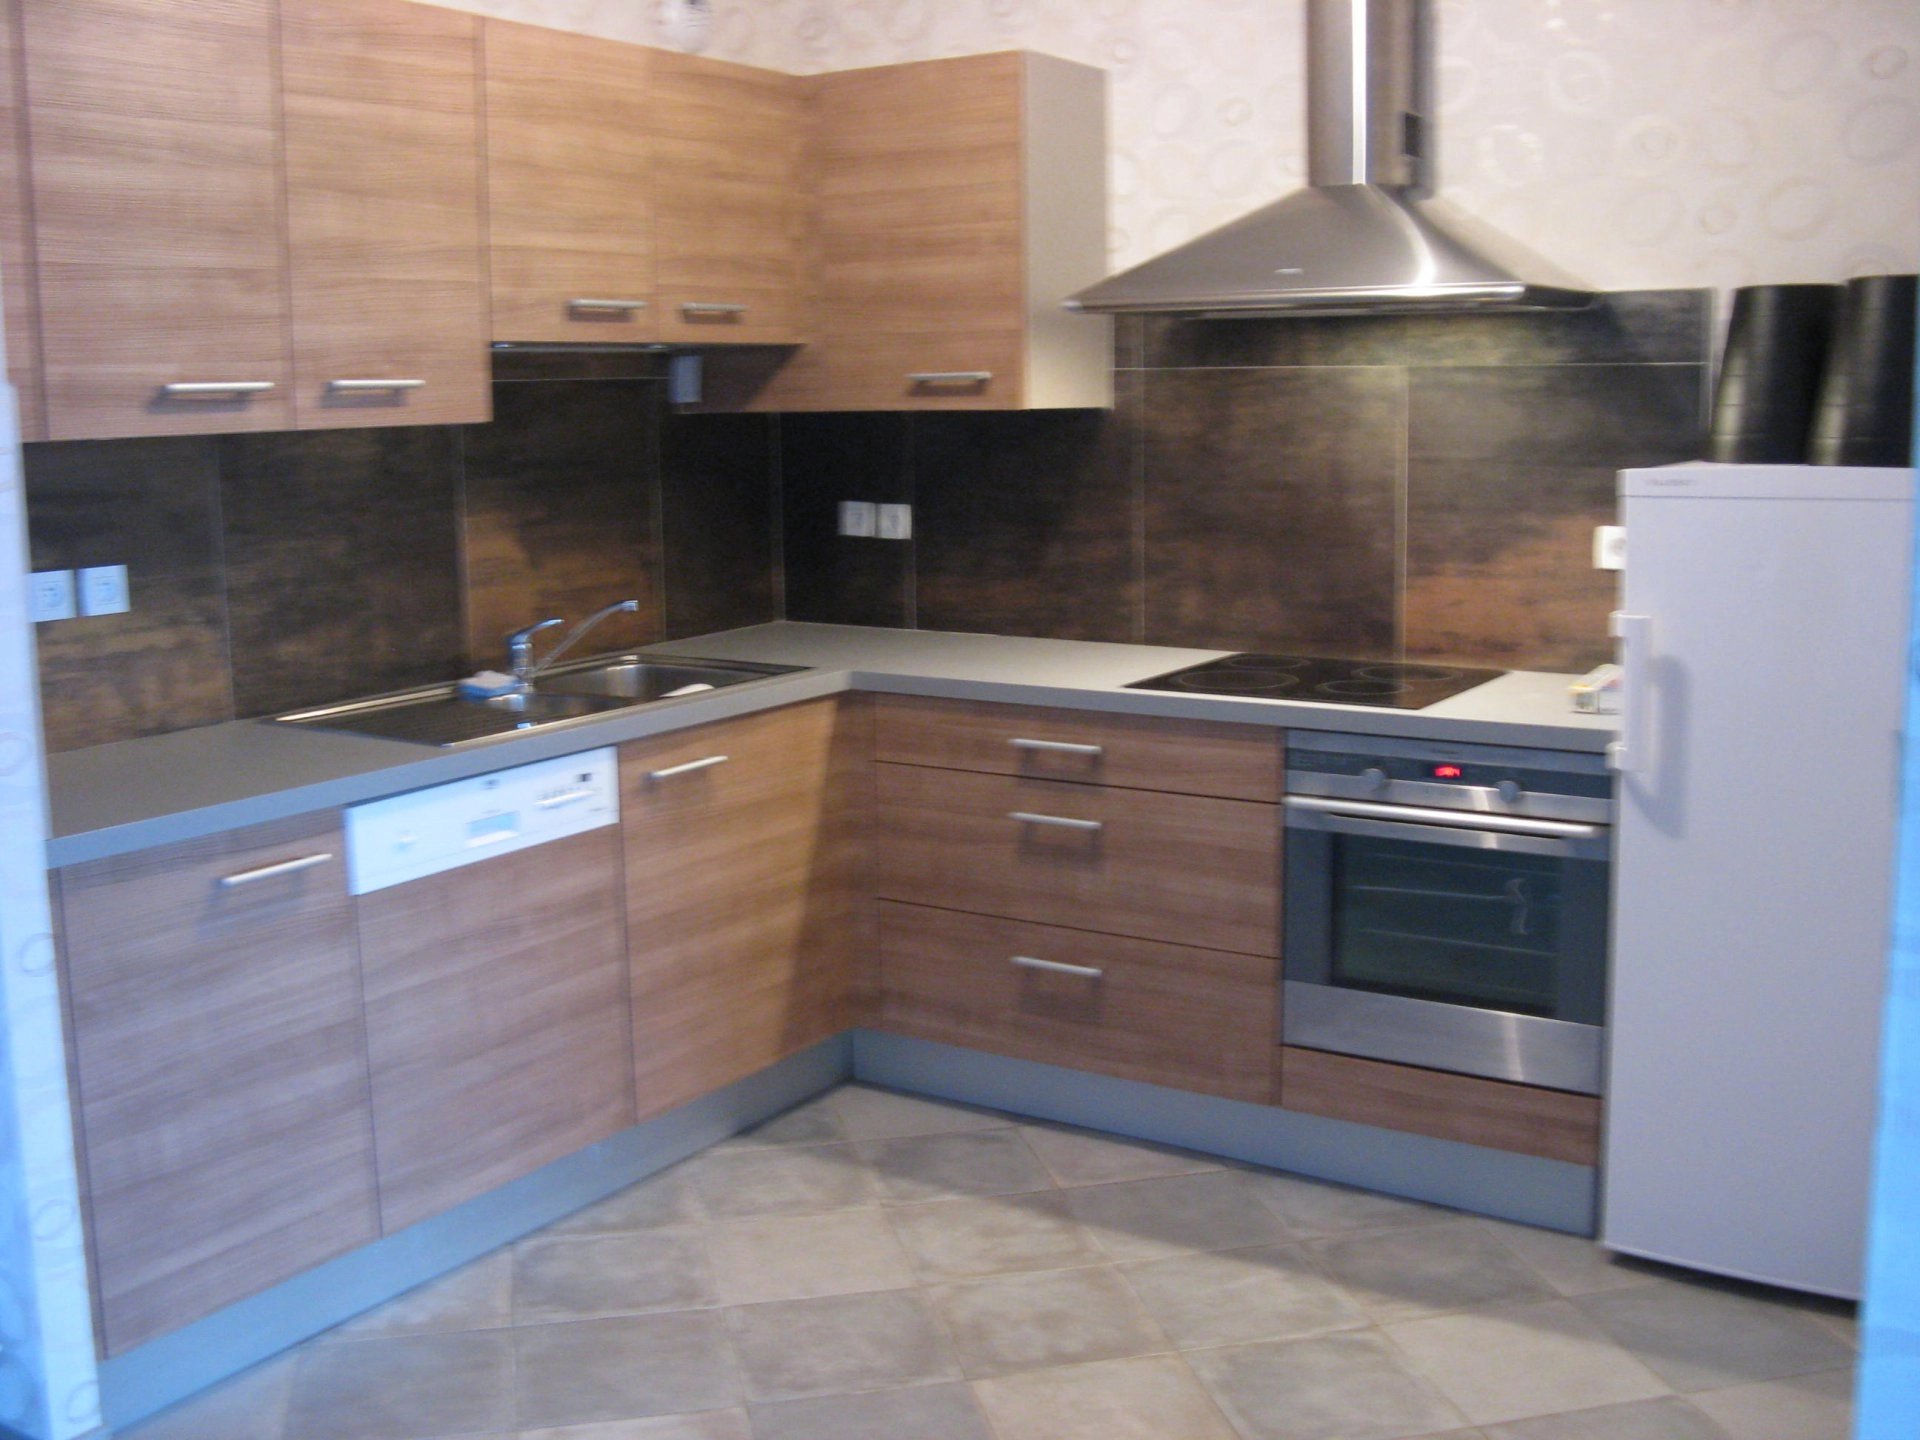 Kitchen Stainless steel Tile